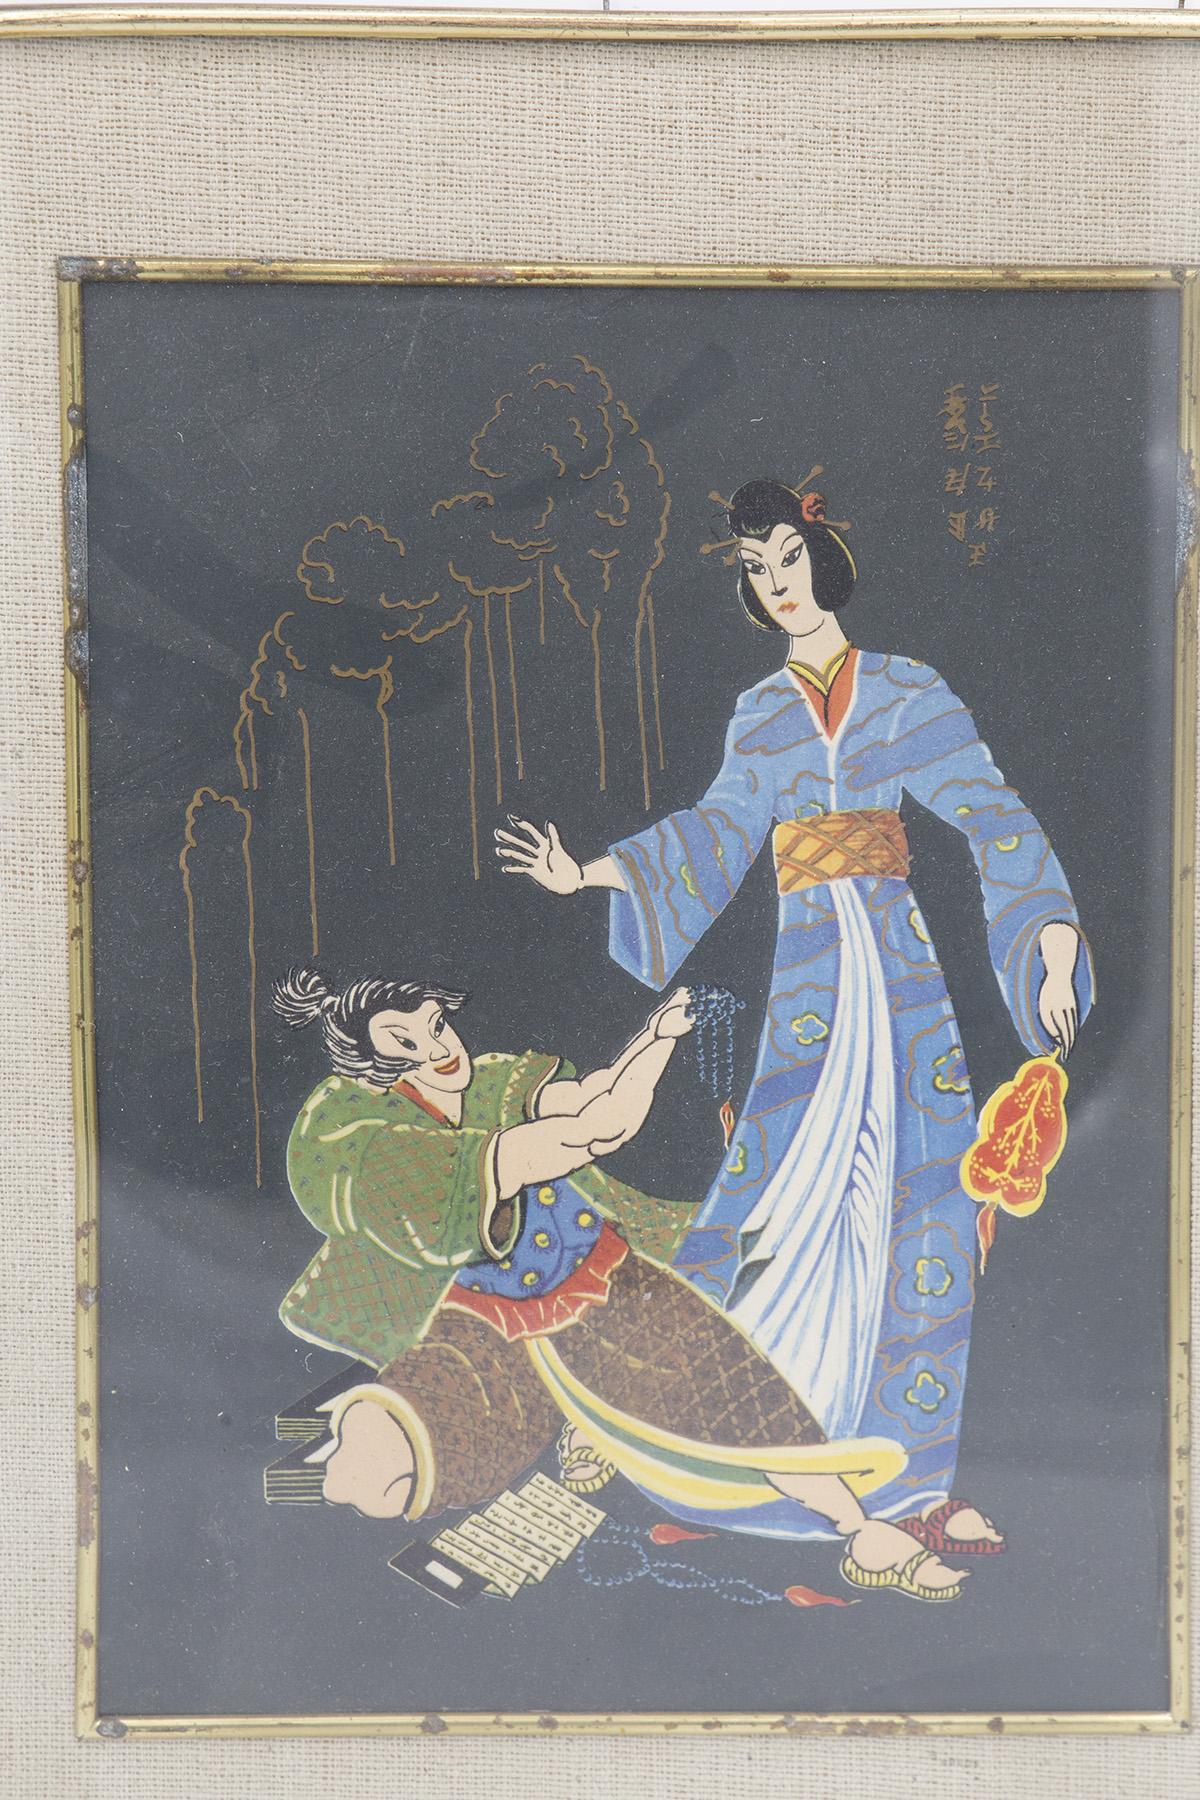 Antikes und sehr seltenes japanisches Gemälde, das in den frühen 1900er Jahren von einem japanischen Edelhersteller hergestellt wurde.
Das Gemälde hat einen rechteckigen Messingrahmen mit abgerundeten Ecken. Im Inneren sehen wir einen zusätzlichen